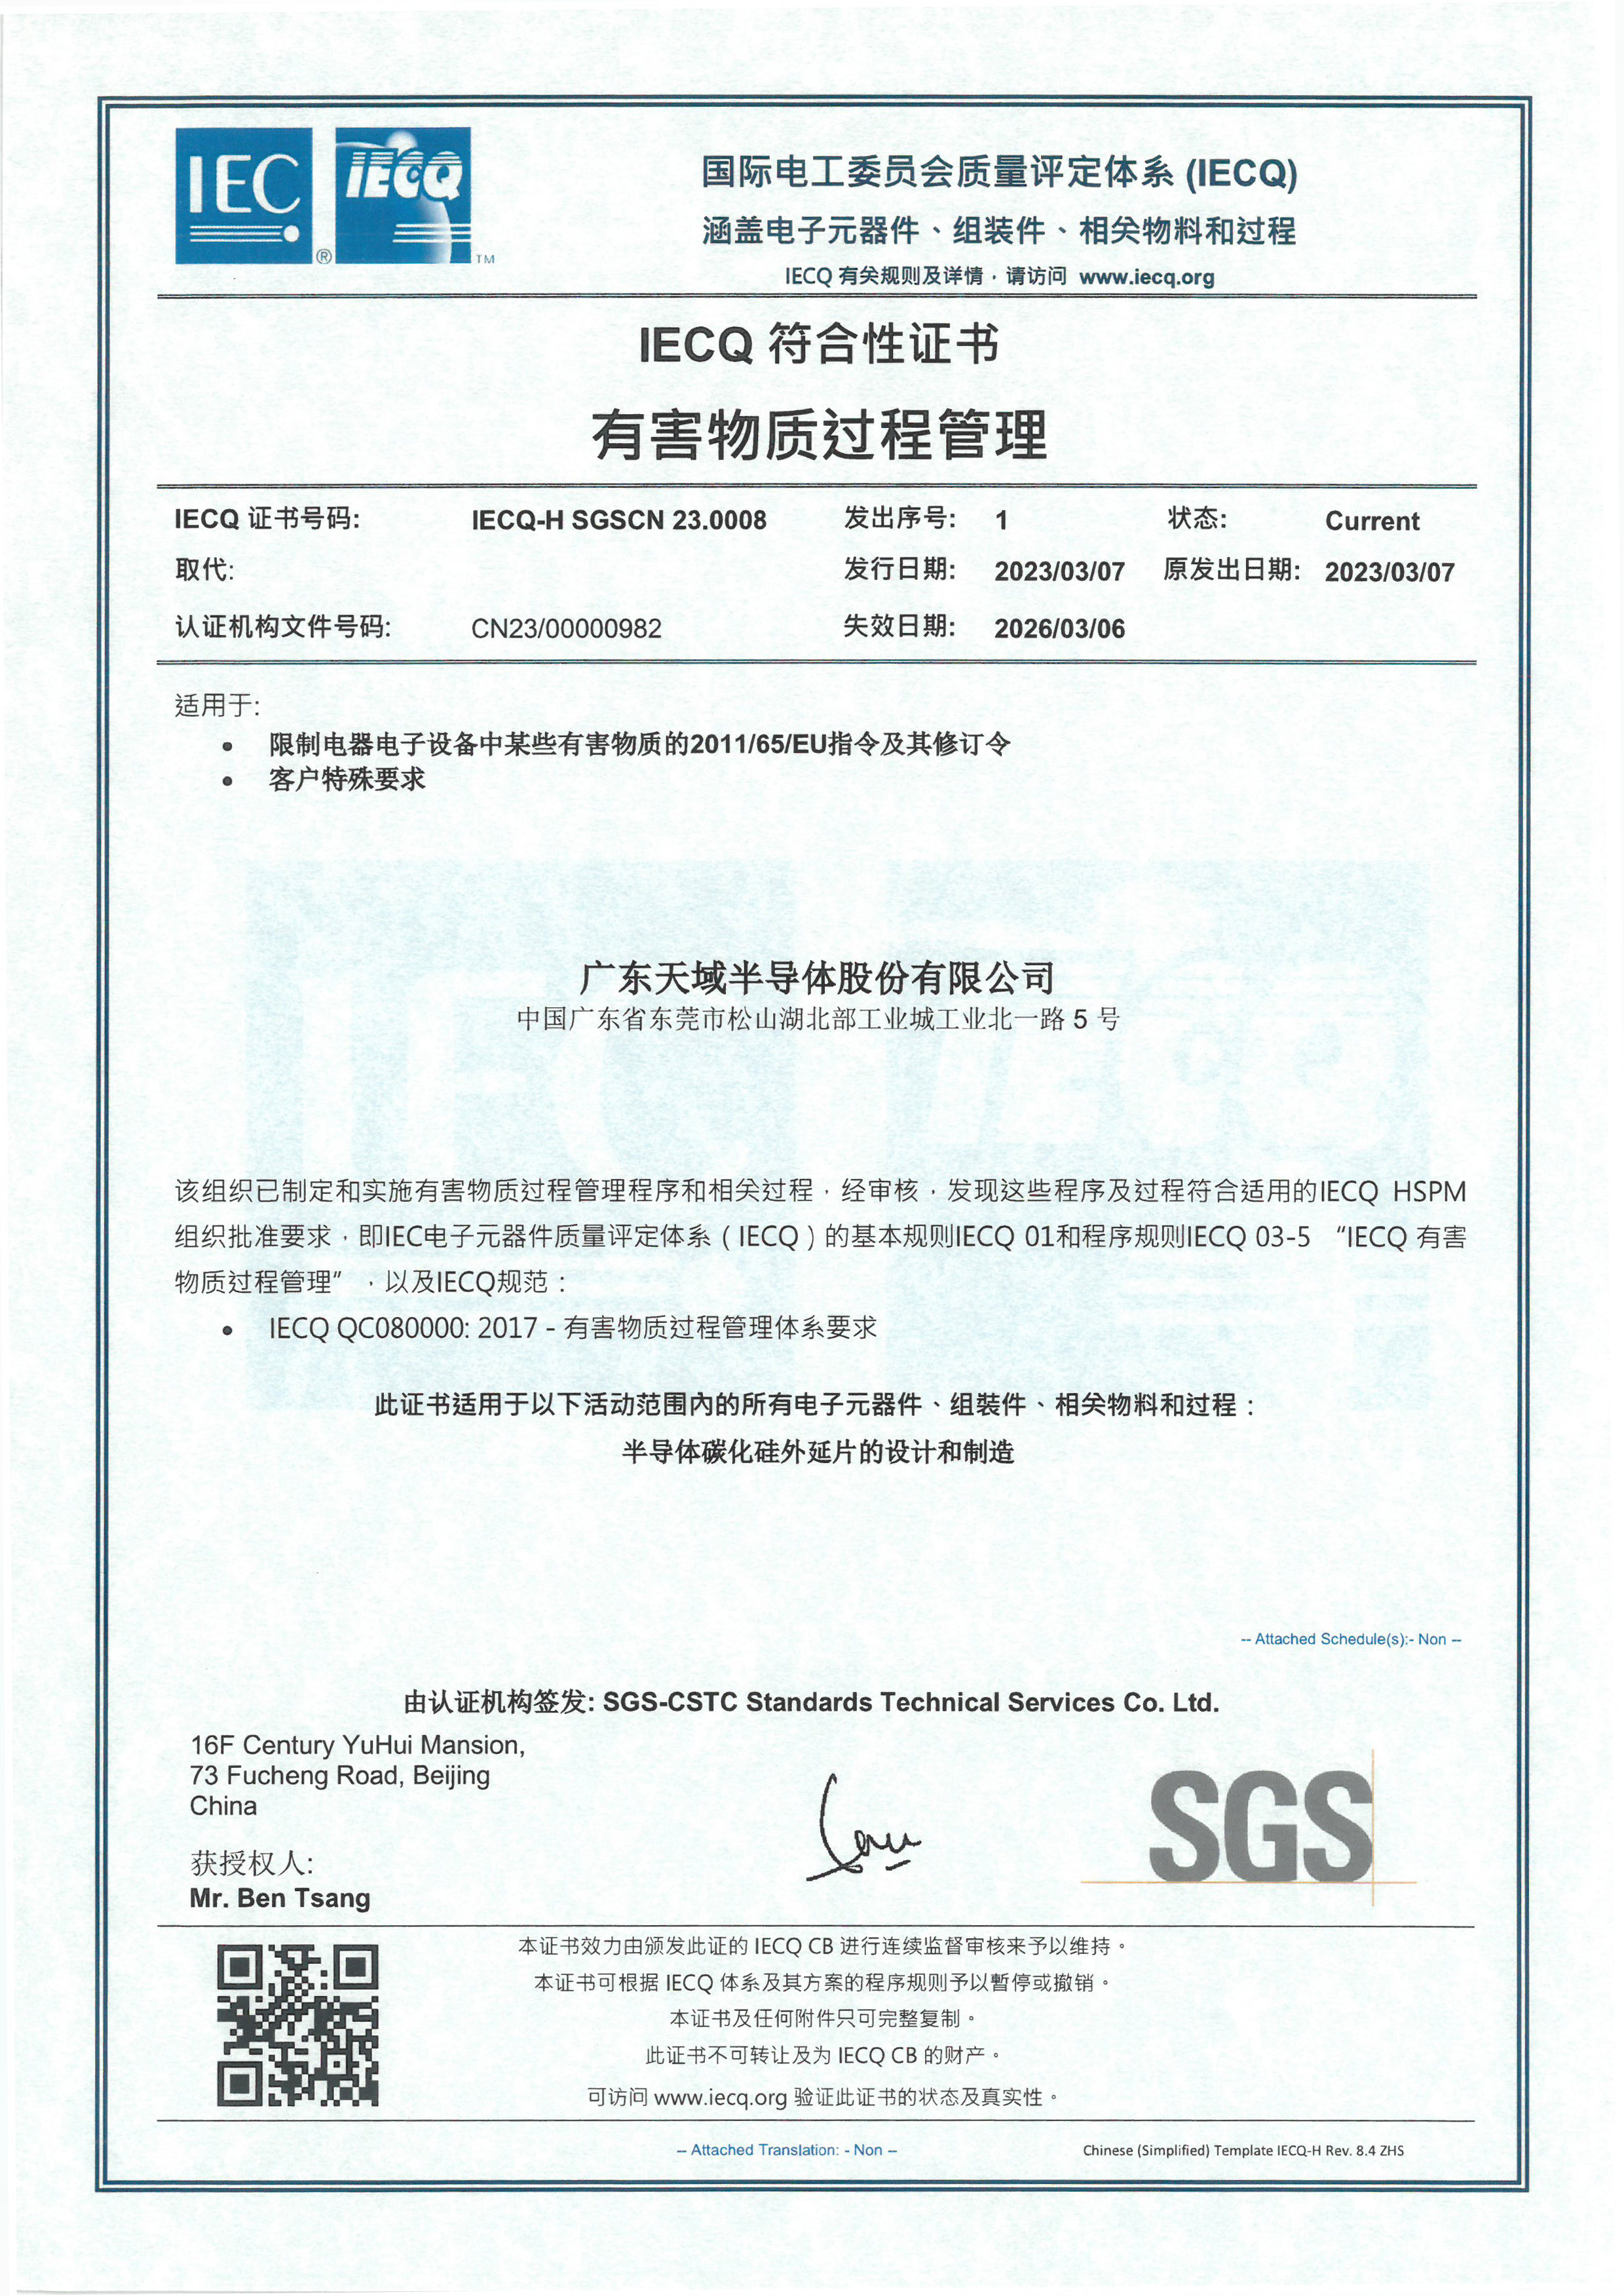 IECQ-QC080000-2017中文版-x.jpg